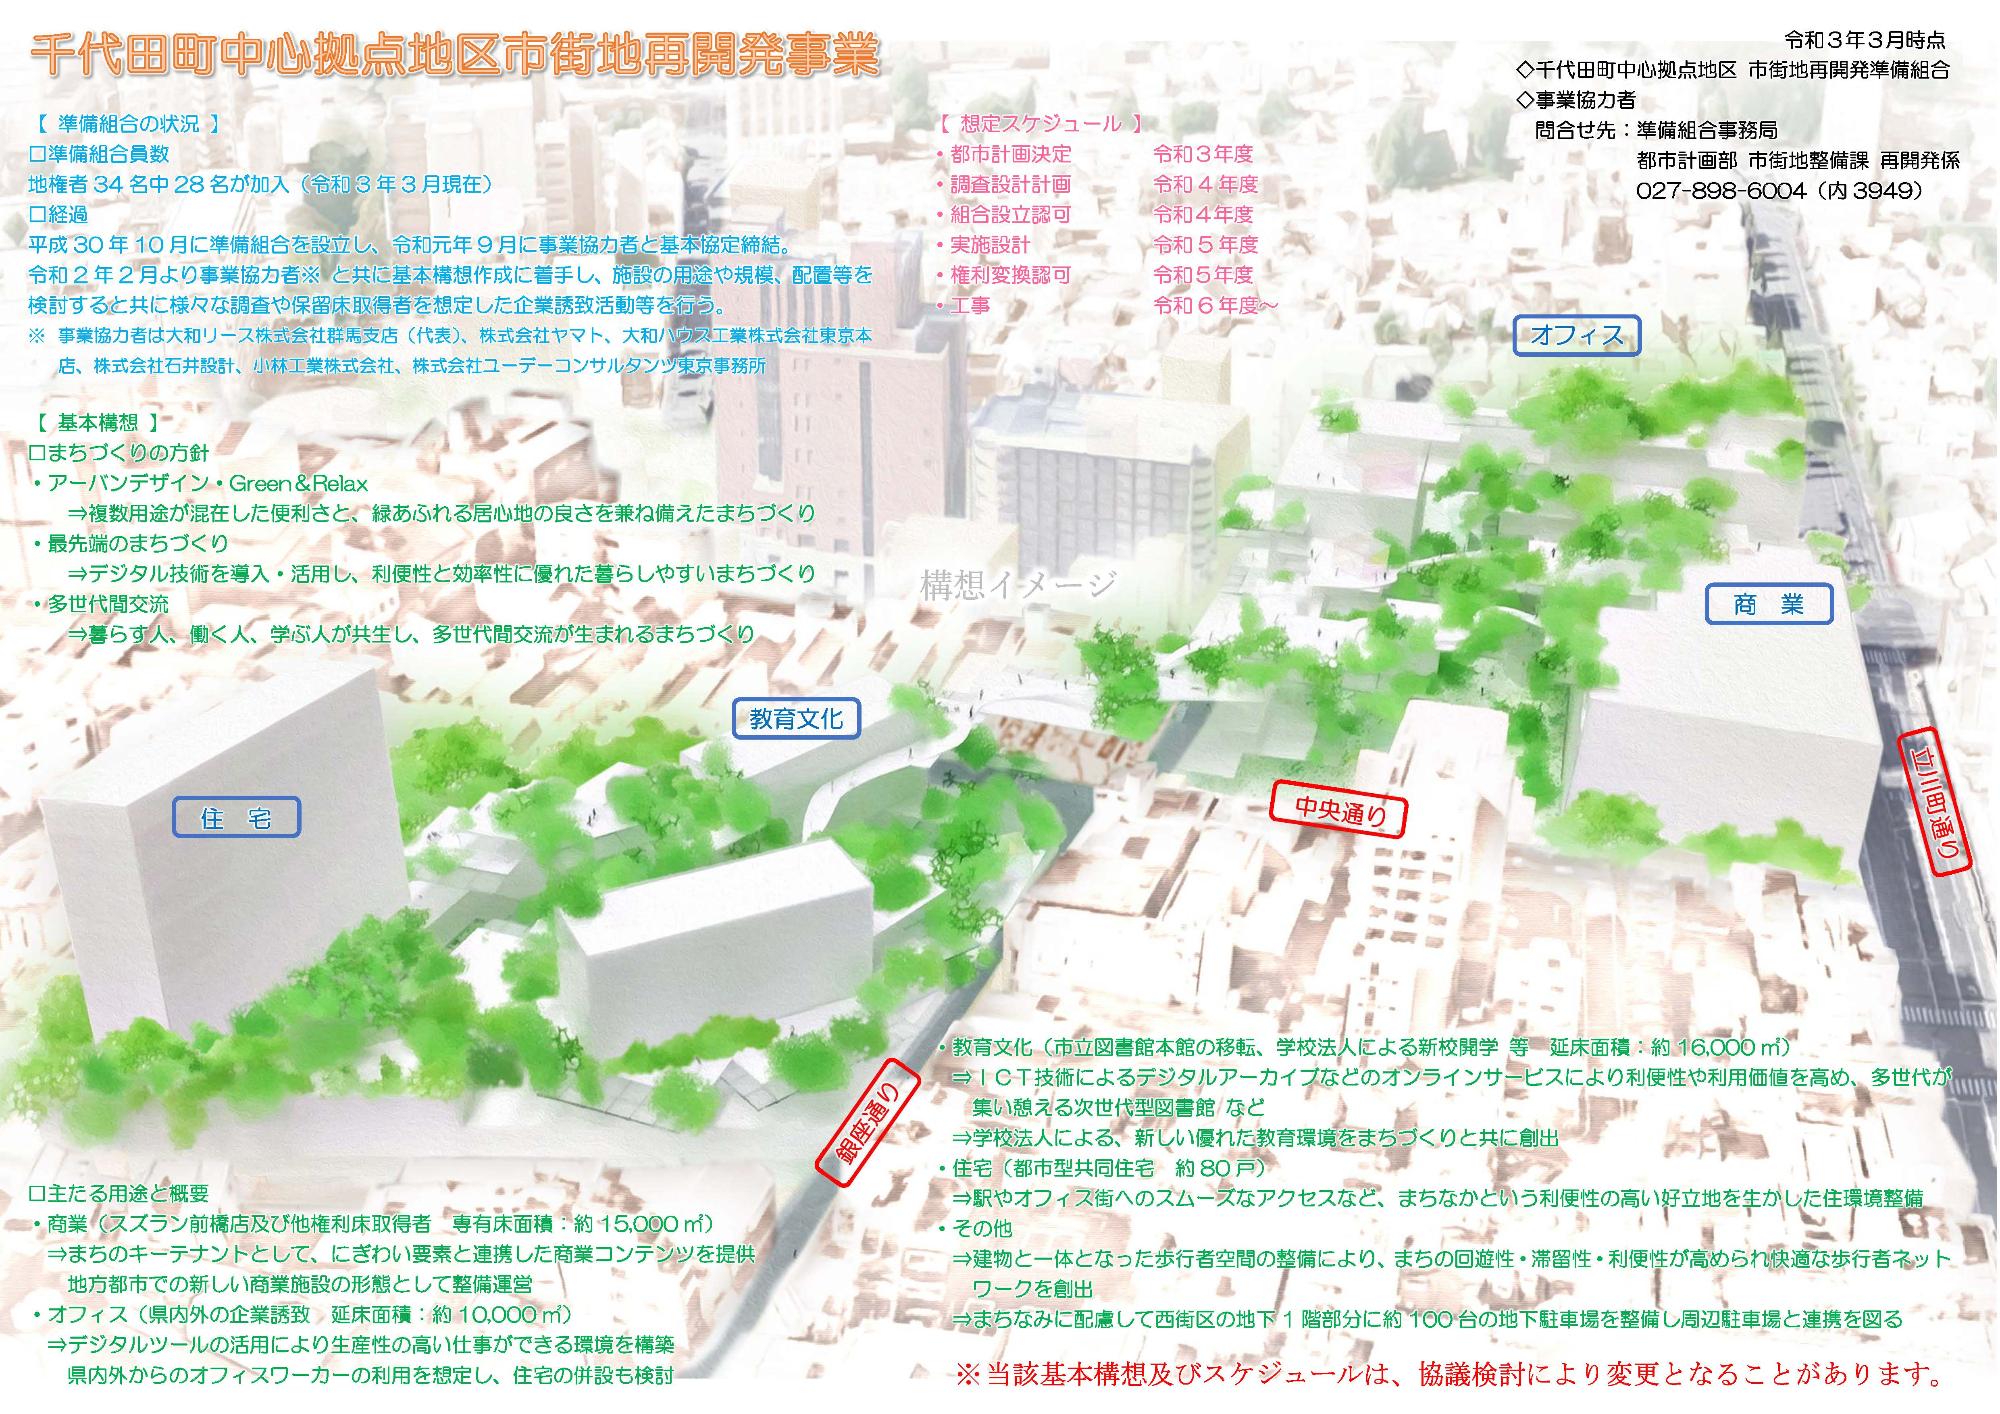 千代田町中心拠点地区市街地再開発事業_基本構想